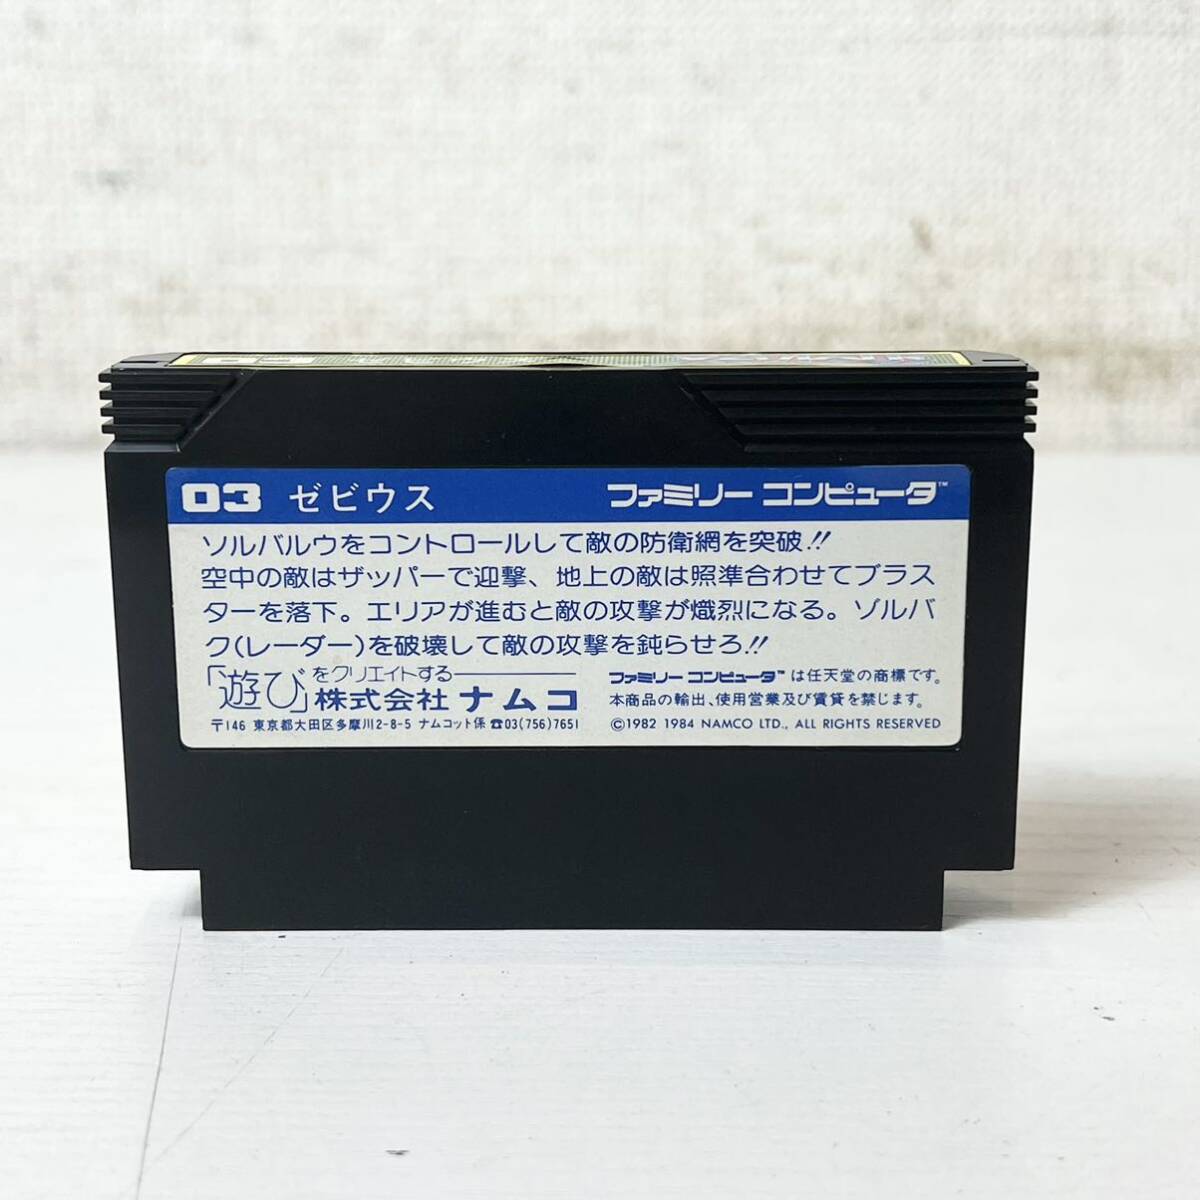 245* б/у товар Namco zebi незначительный Famicom soft FC Family компьютер работоспособность не проверялась текущее состояние товар *